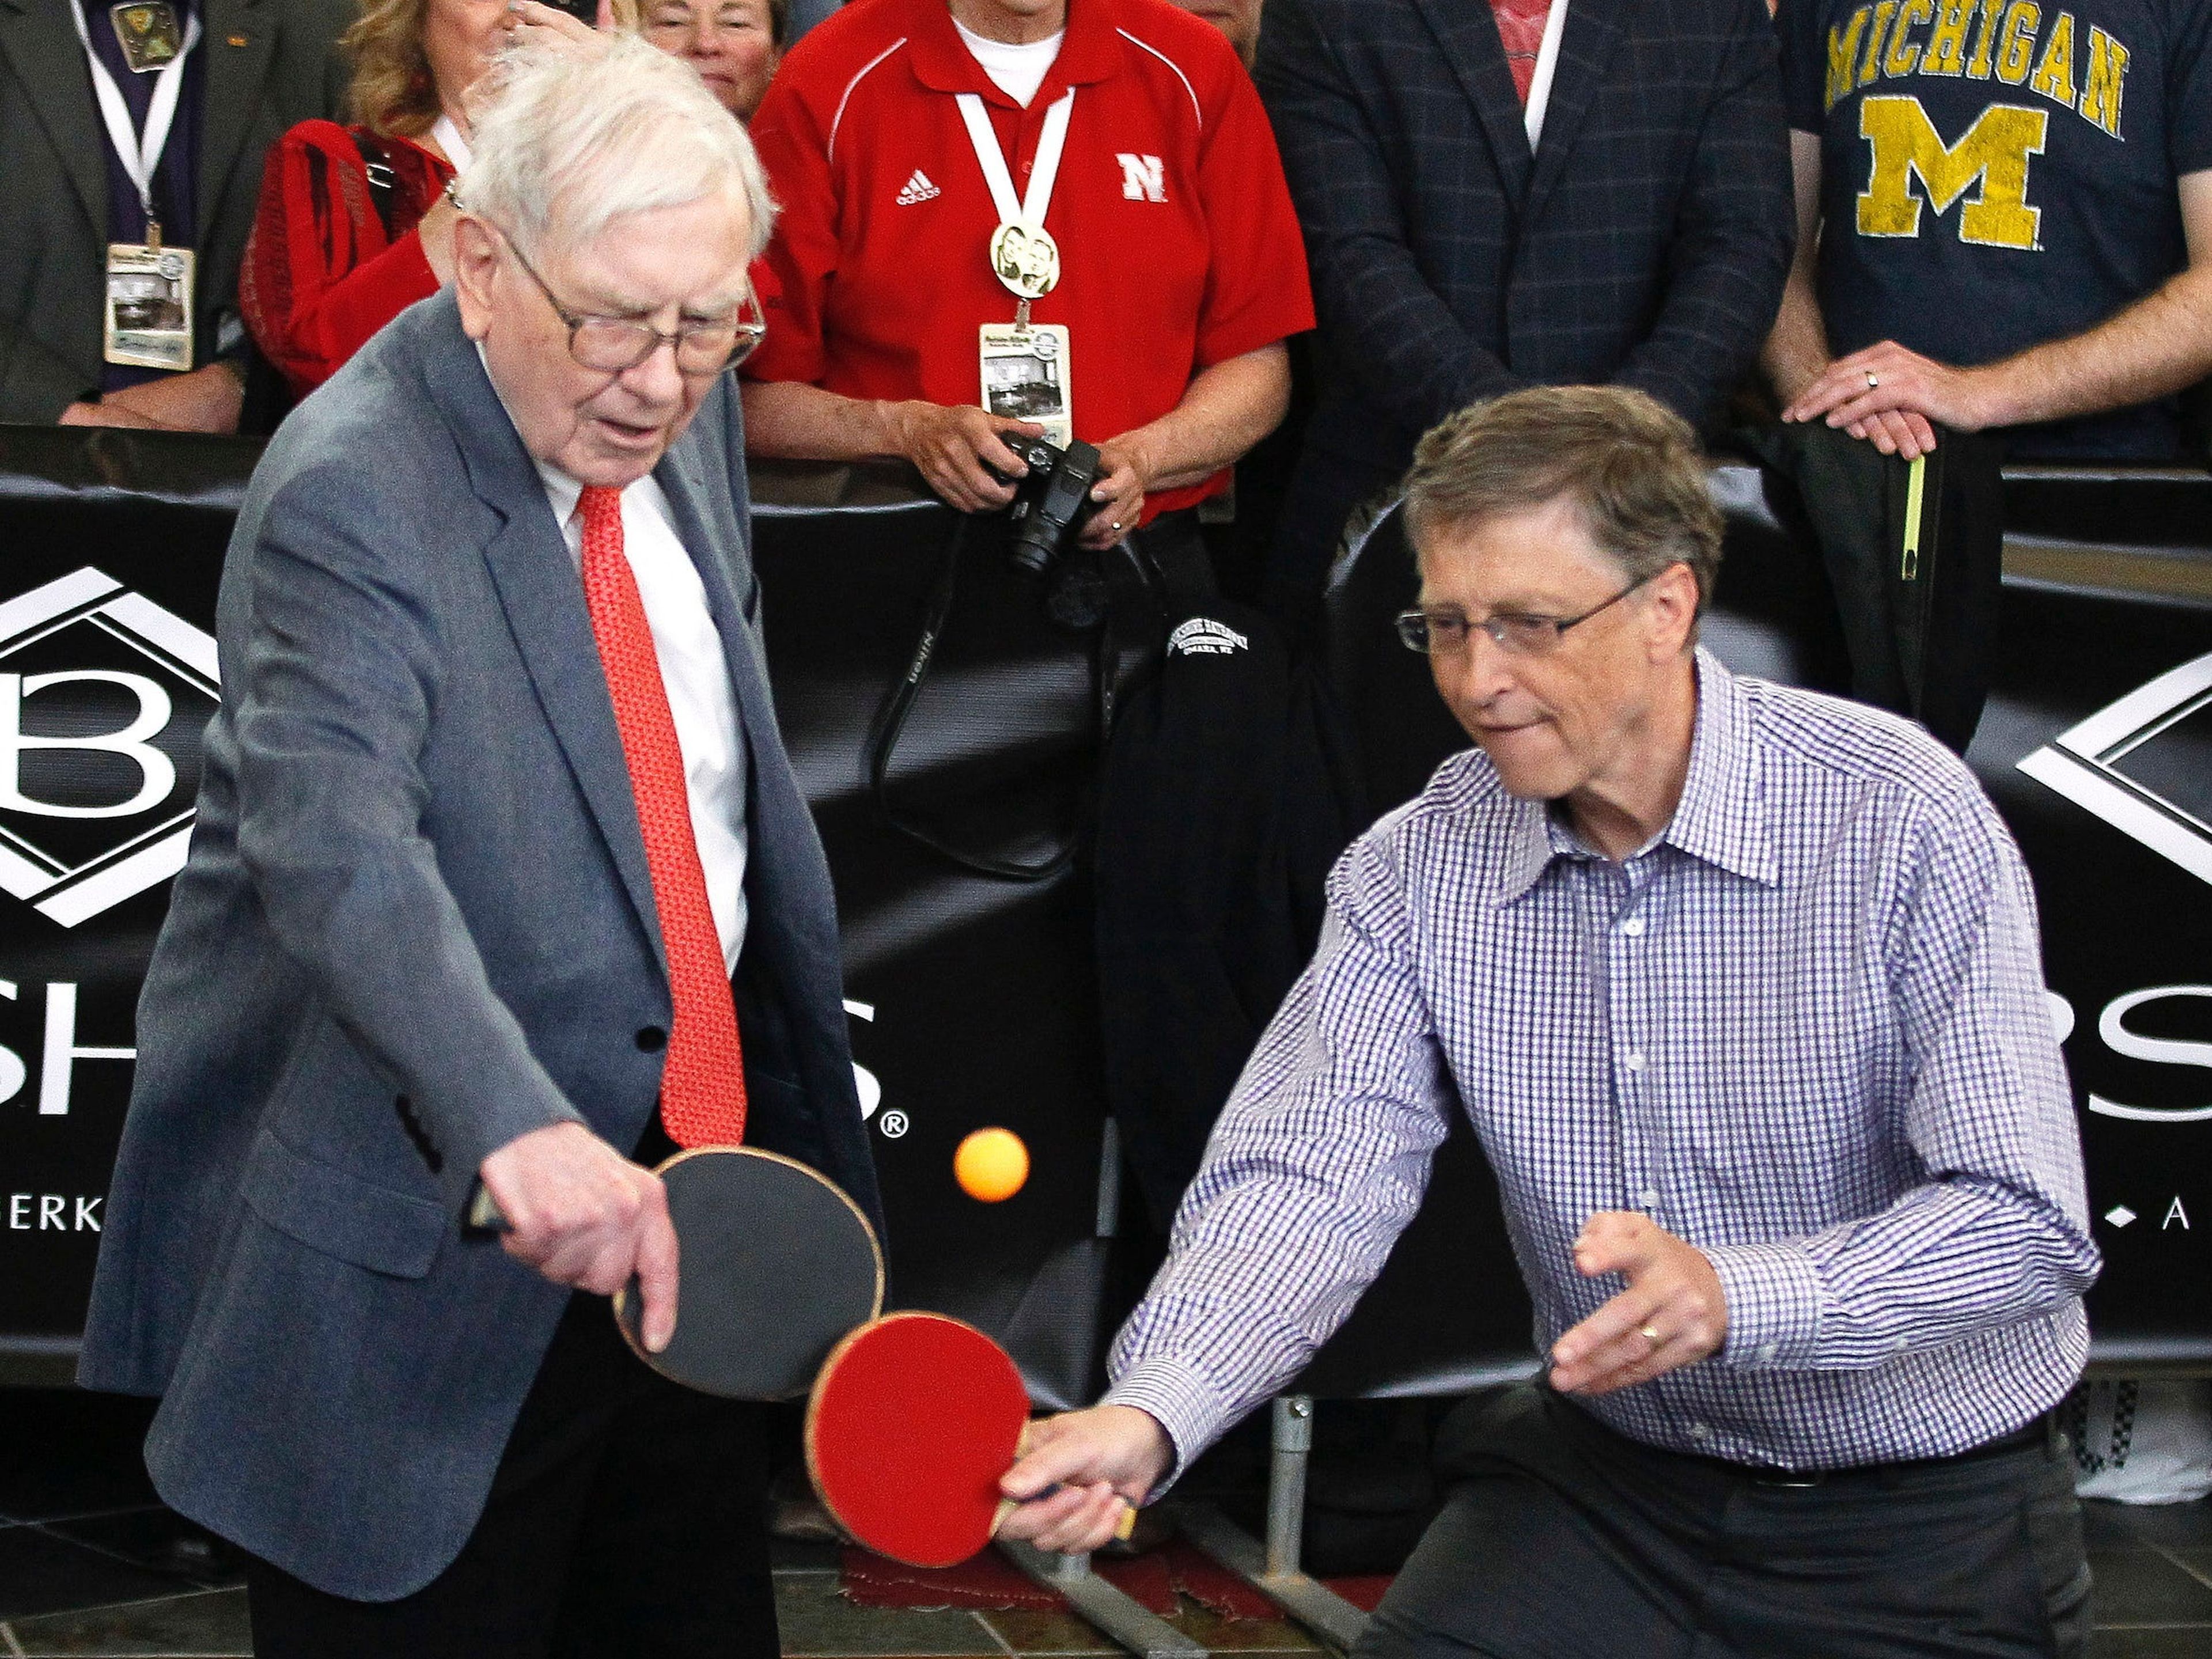 Gates y Buffet jugando un partido de ping pong.